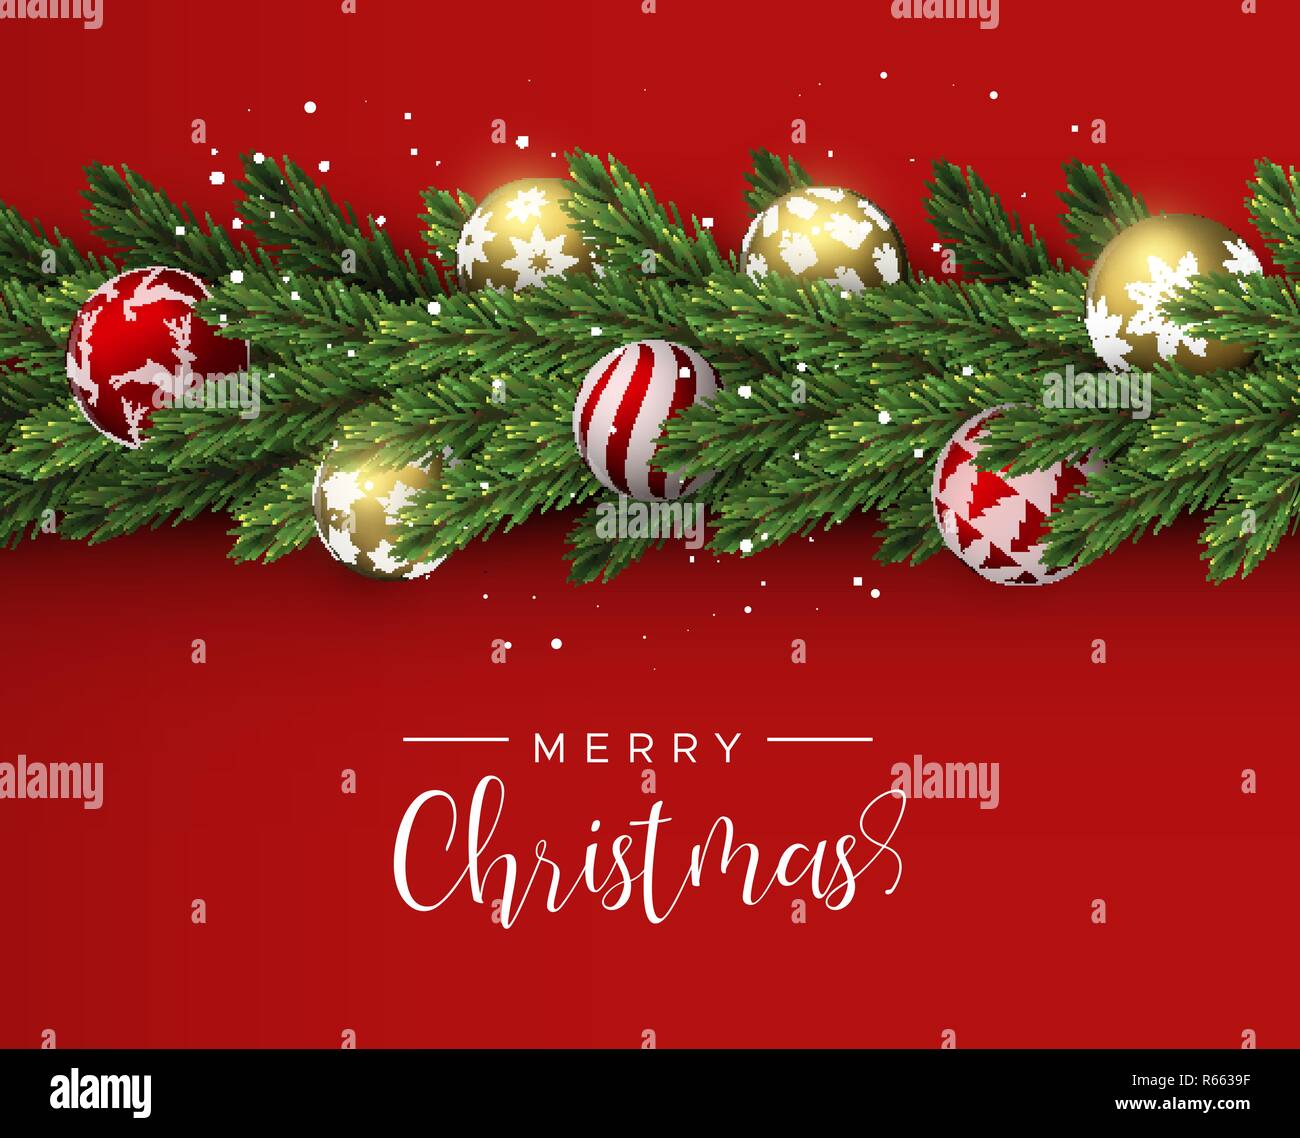 Frohe Weihnachten Frohes Neues Jahr Karte. Realistische Pine Tree Kranz Kranz mit Gold und Rot xmas Aufhänger Kugeln für Luxus Urlaub Einladung oder Jahreszeiten Stock Vektor